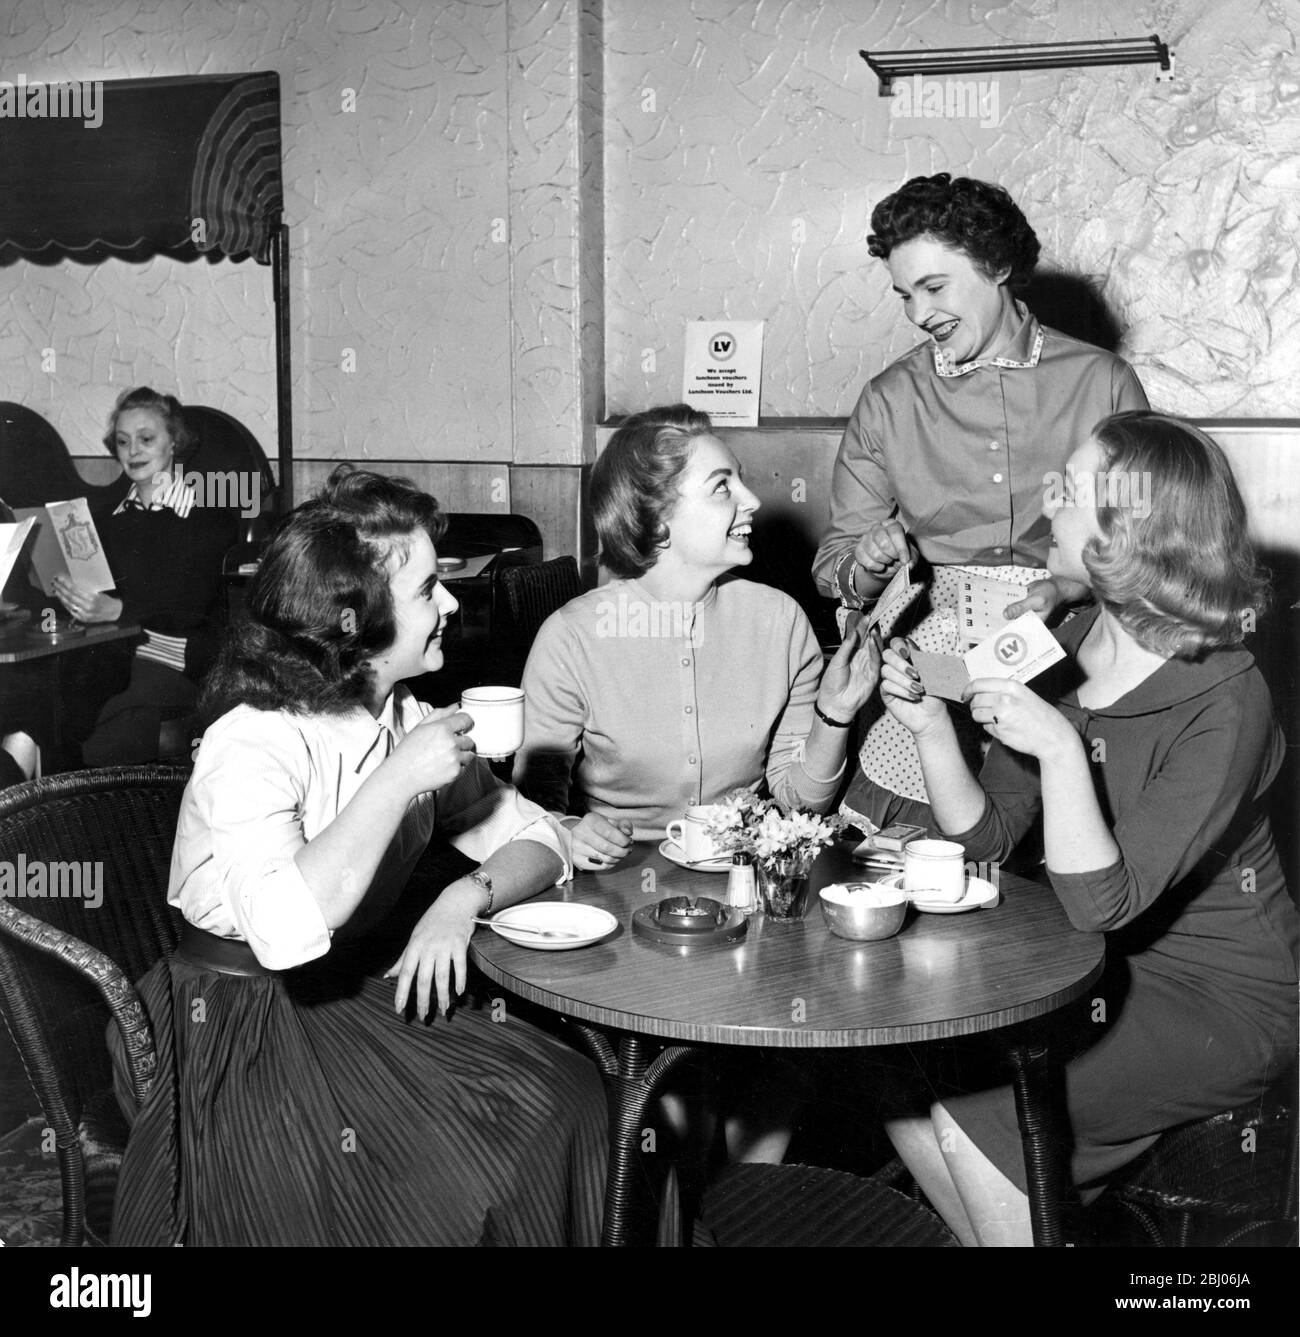 I voucher incoraggiano i lavoratori a mangiare regolarmente il pranzo, senza dover fare a meno di farlo. Un medico ha scoperto che il suo personale d'ufficio ha speso i soldi del pranzo sui dischi e sui nylons - gli spettacoli dell'immagine dopo pranzo al grill di S & R in Denman Street - le ragazze pagano il loro pasto con i buoni del pranzo. 1957 Foto Stock